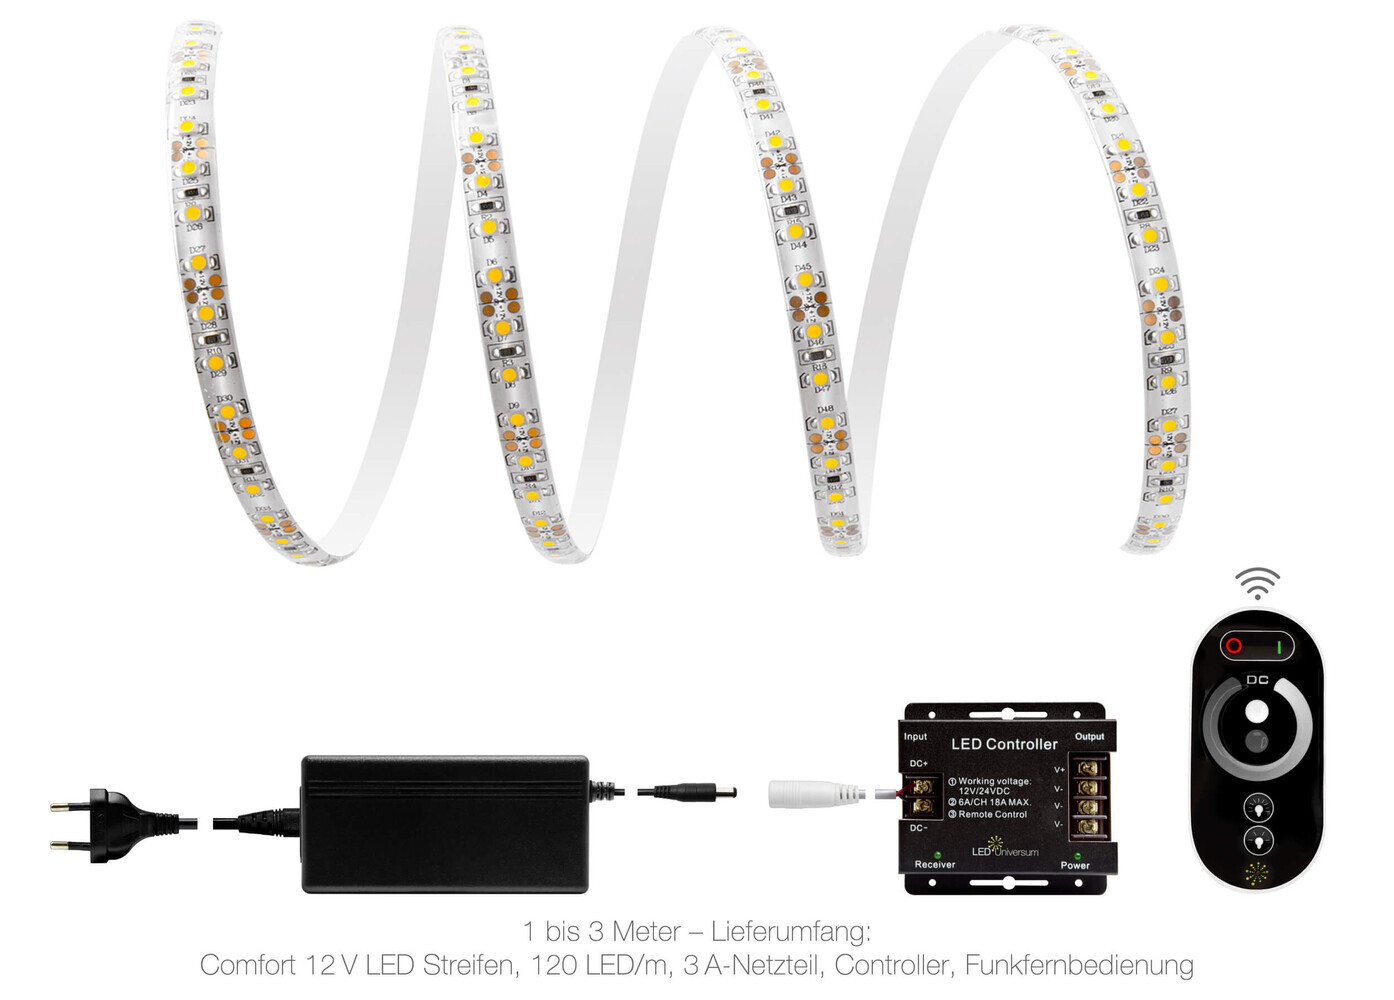 Hochwertiger, warmweißer LED-Streifen von LED Universum mit zusätzlichem Funk-Set und Netzteil